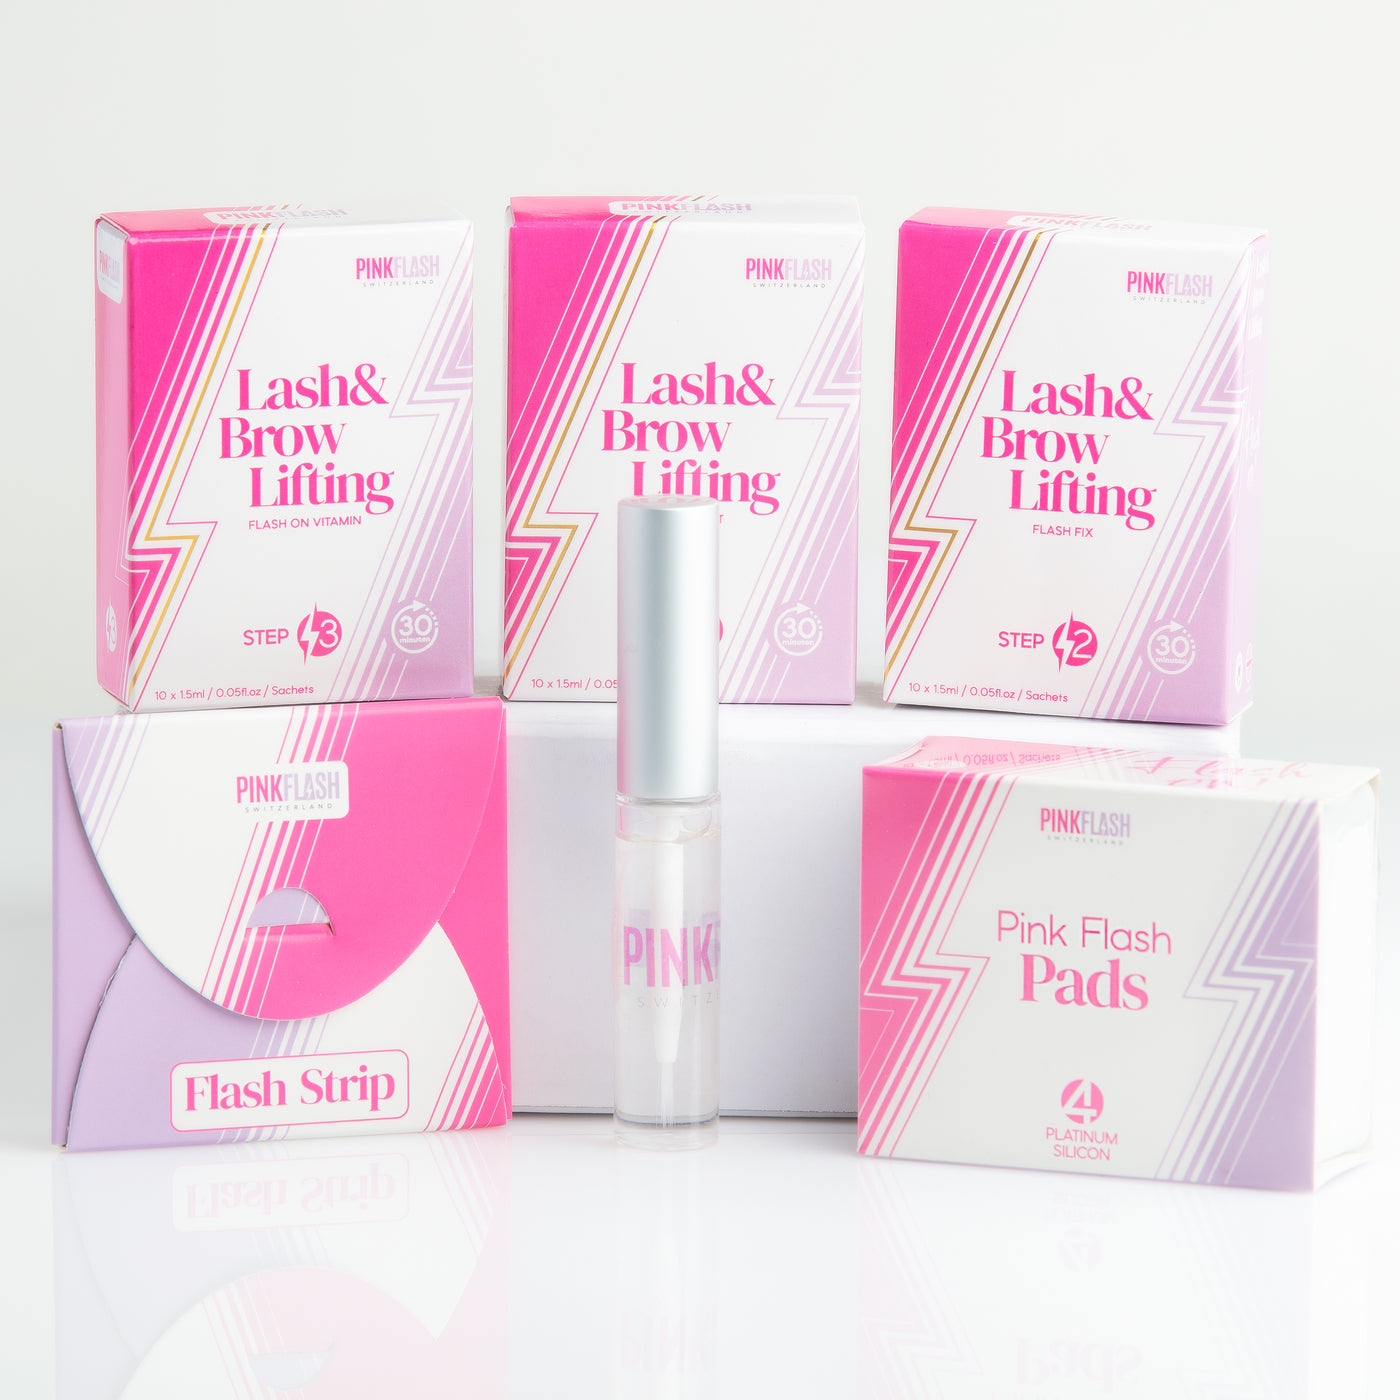 Pink Flash Switzerland Lash & Brow Lifting Kit